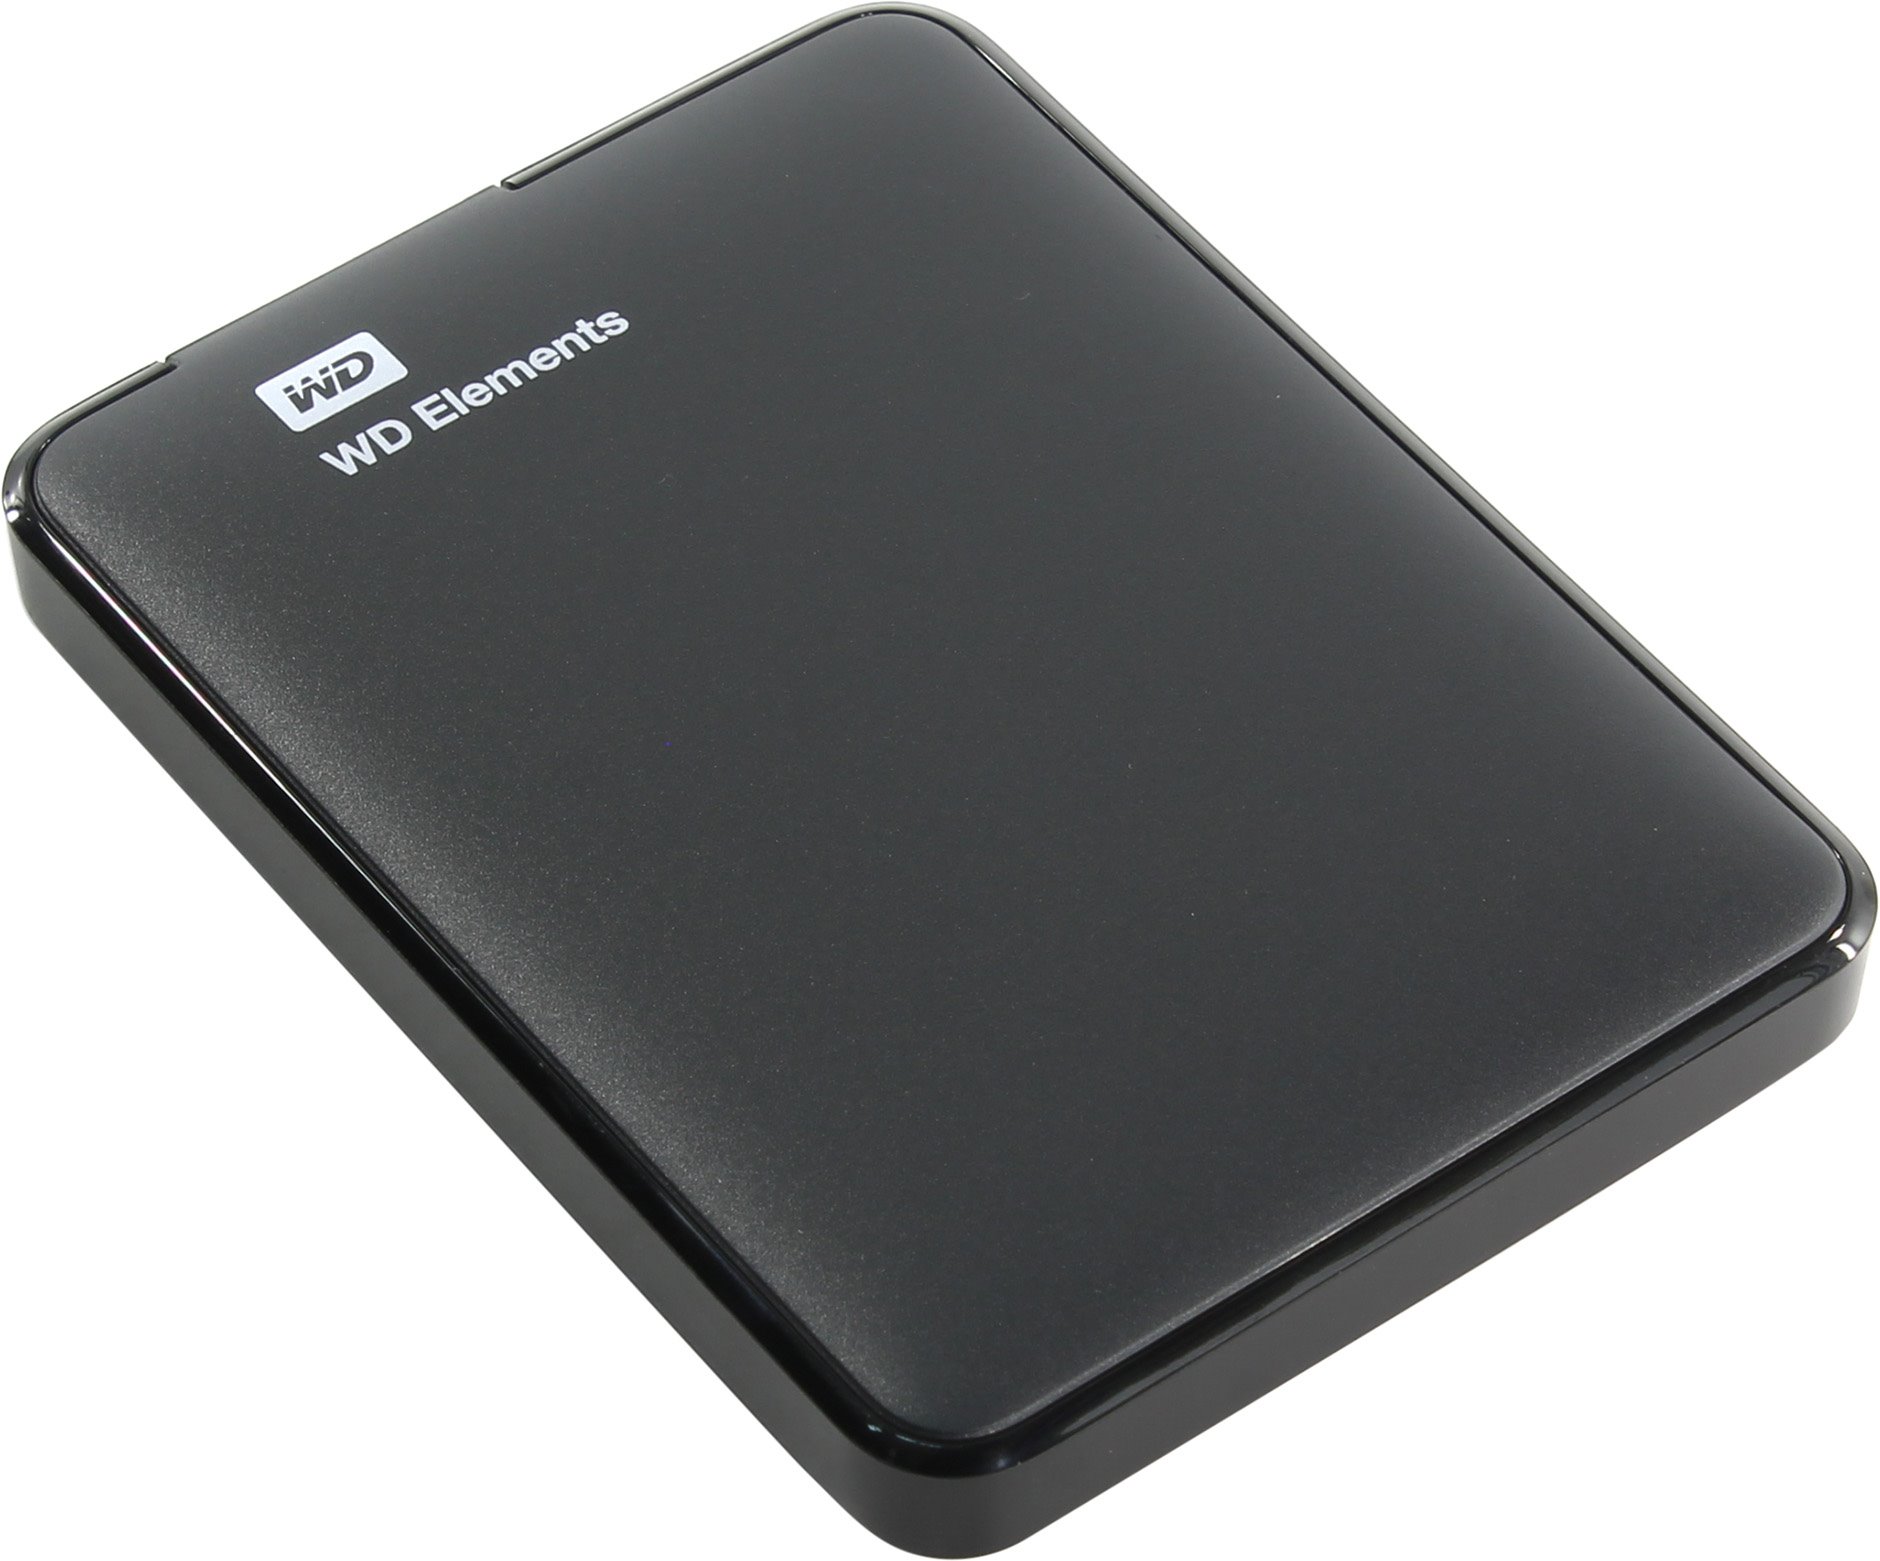 Внешний жесткий диск (HDD) Western Digital 1Tb Elements Portable, 2.5, USB 3.0, черный (WDBUZG0010BBK-WESN)